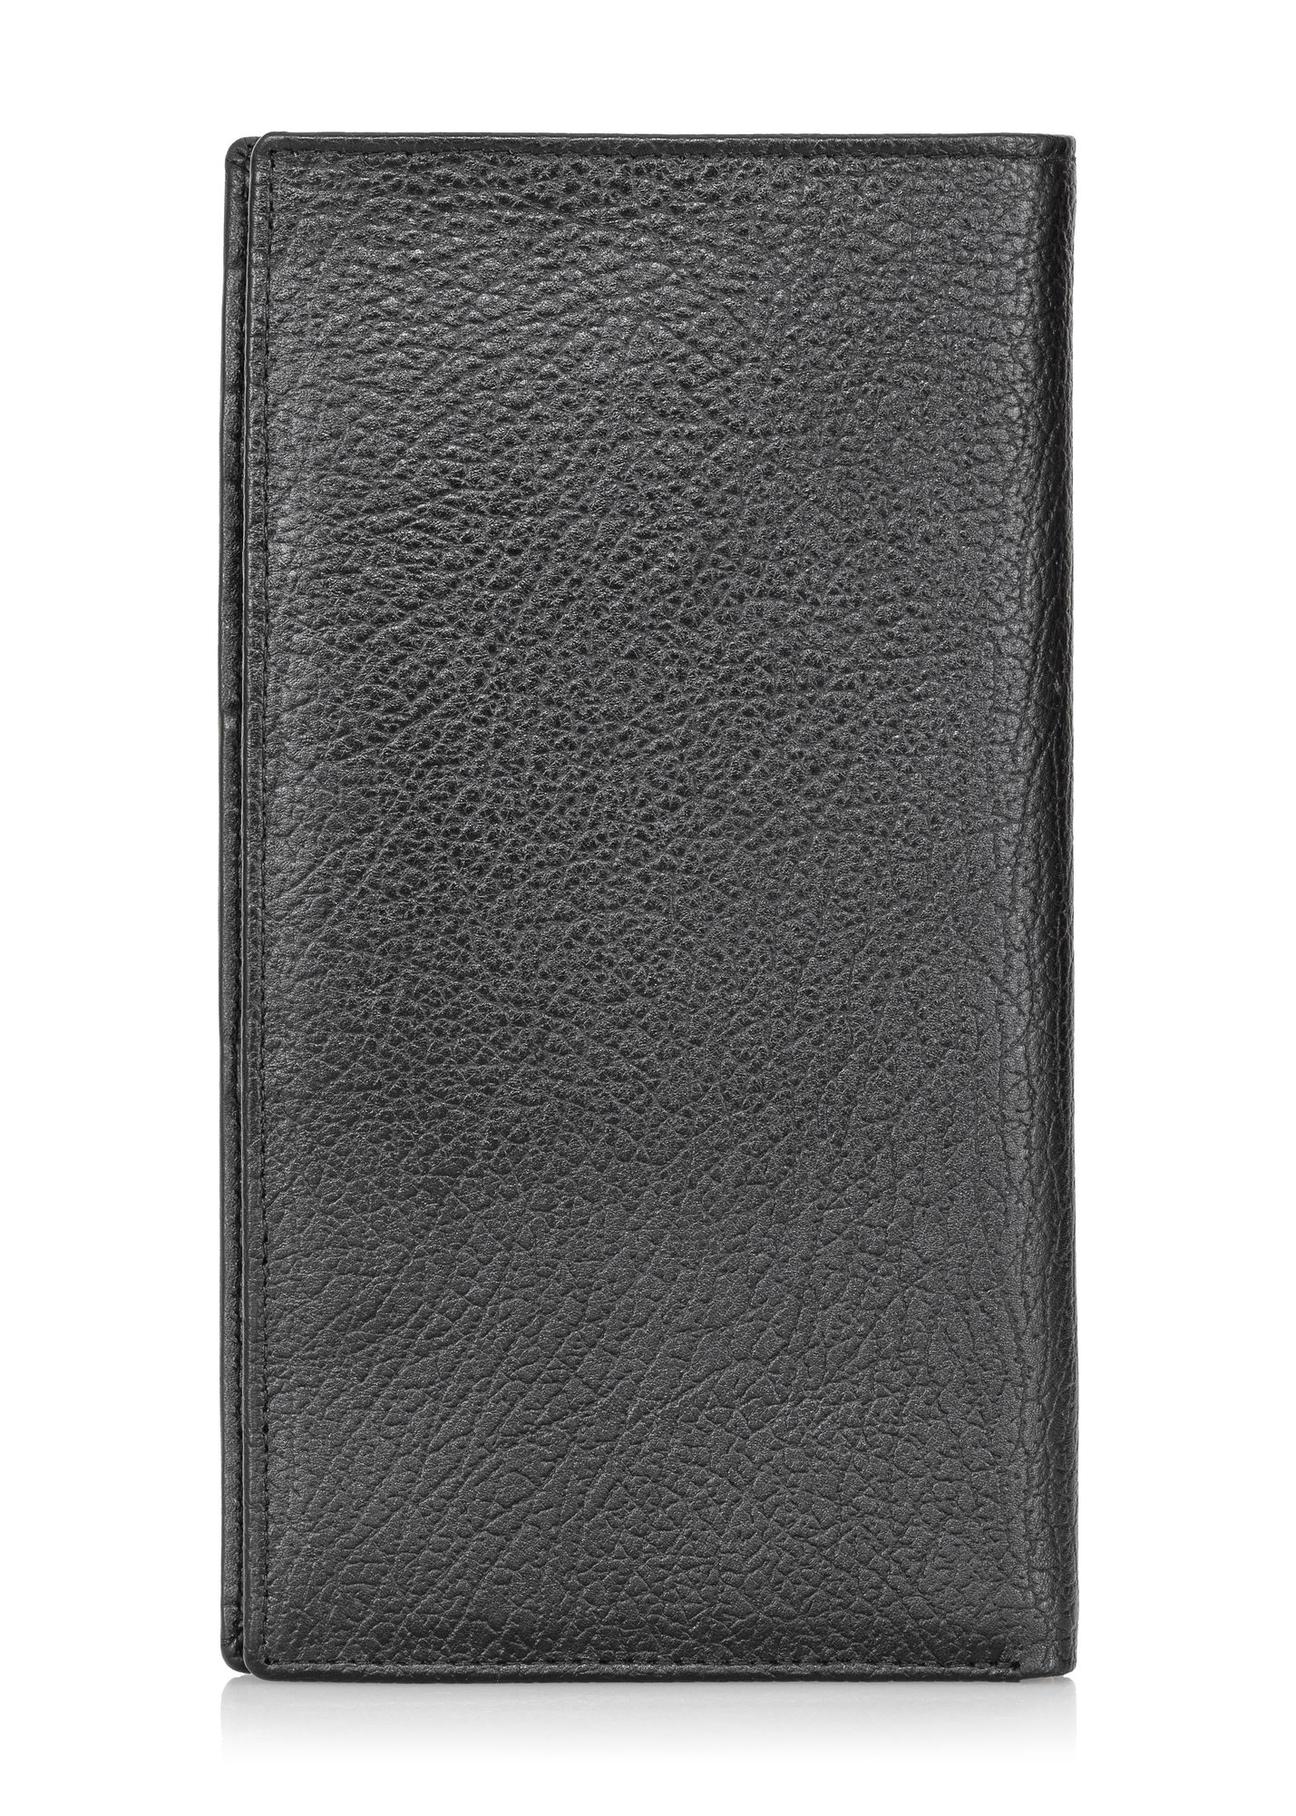 Skórzany groszkowany portfel męski PORMS-0542-99(W23)